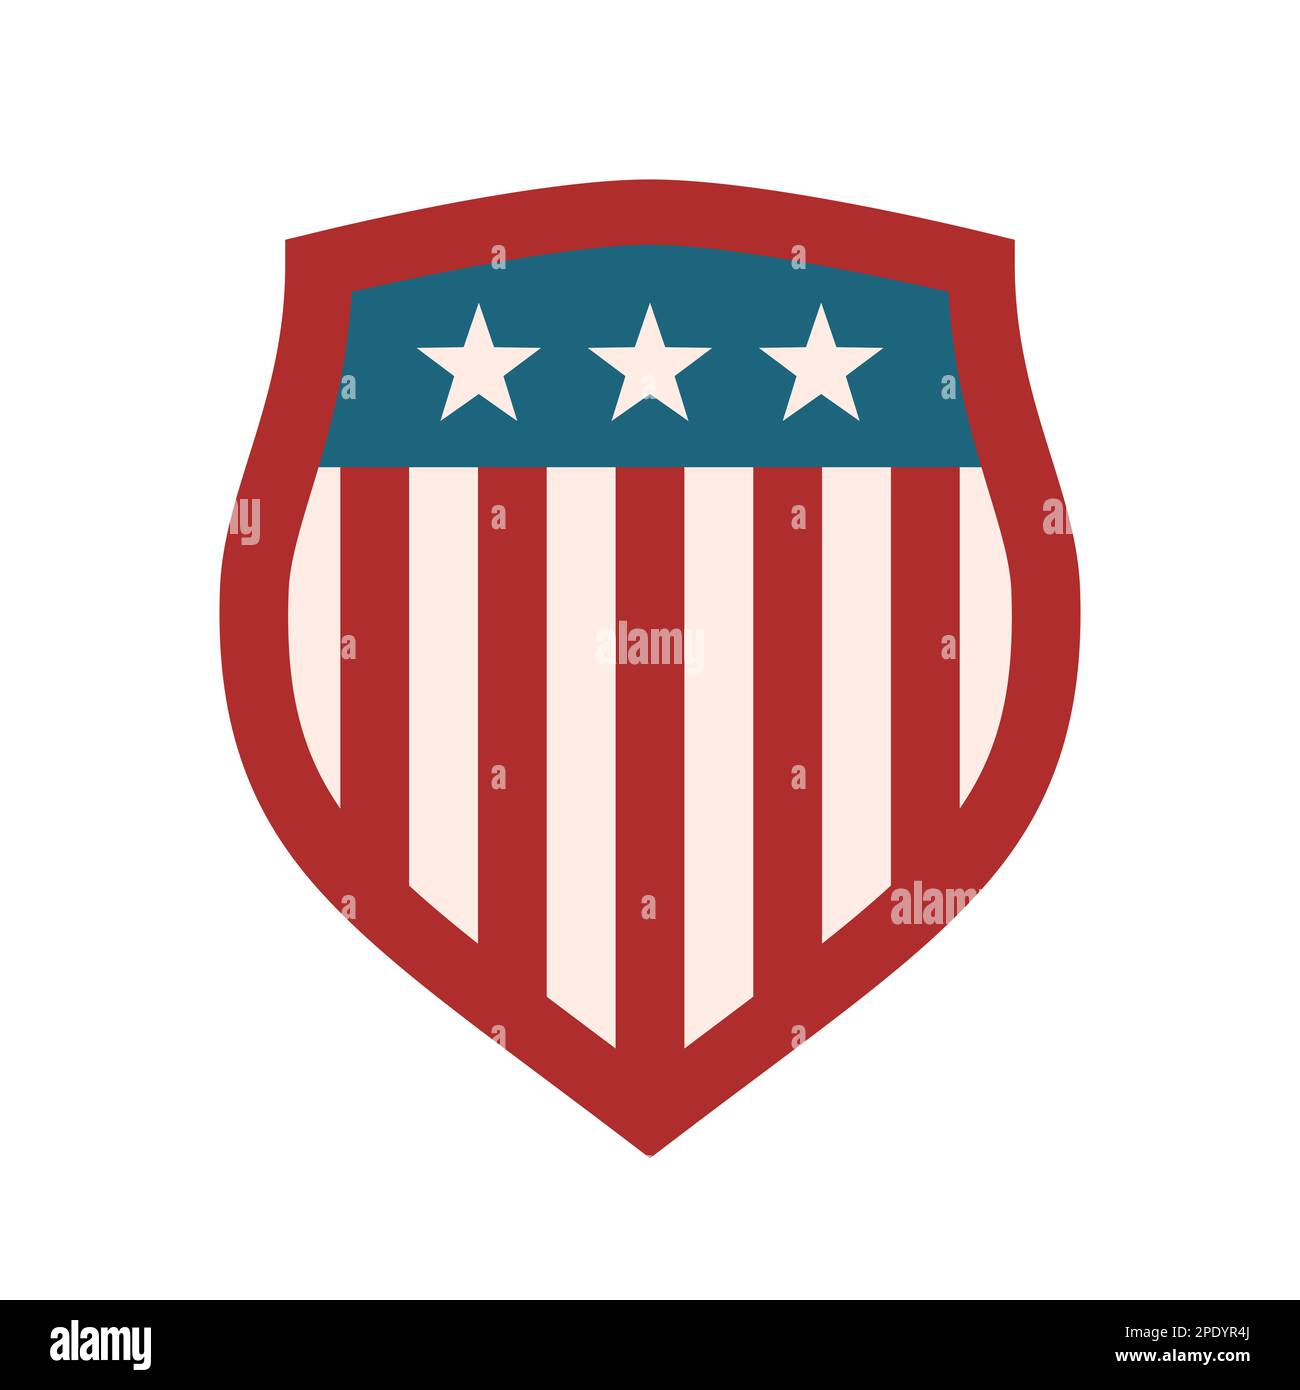 Simbolo americano dello scudo. Emblema della squadra sportiva. Tema della bandiera degli Stati Uniti d'America. Colori patriottici rosso, blu, bianco. USA segno con stelle e strisce. Illustrazione Vettoriale